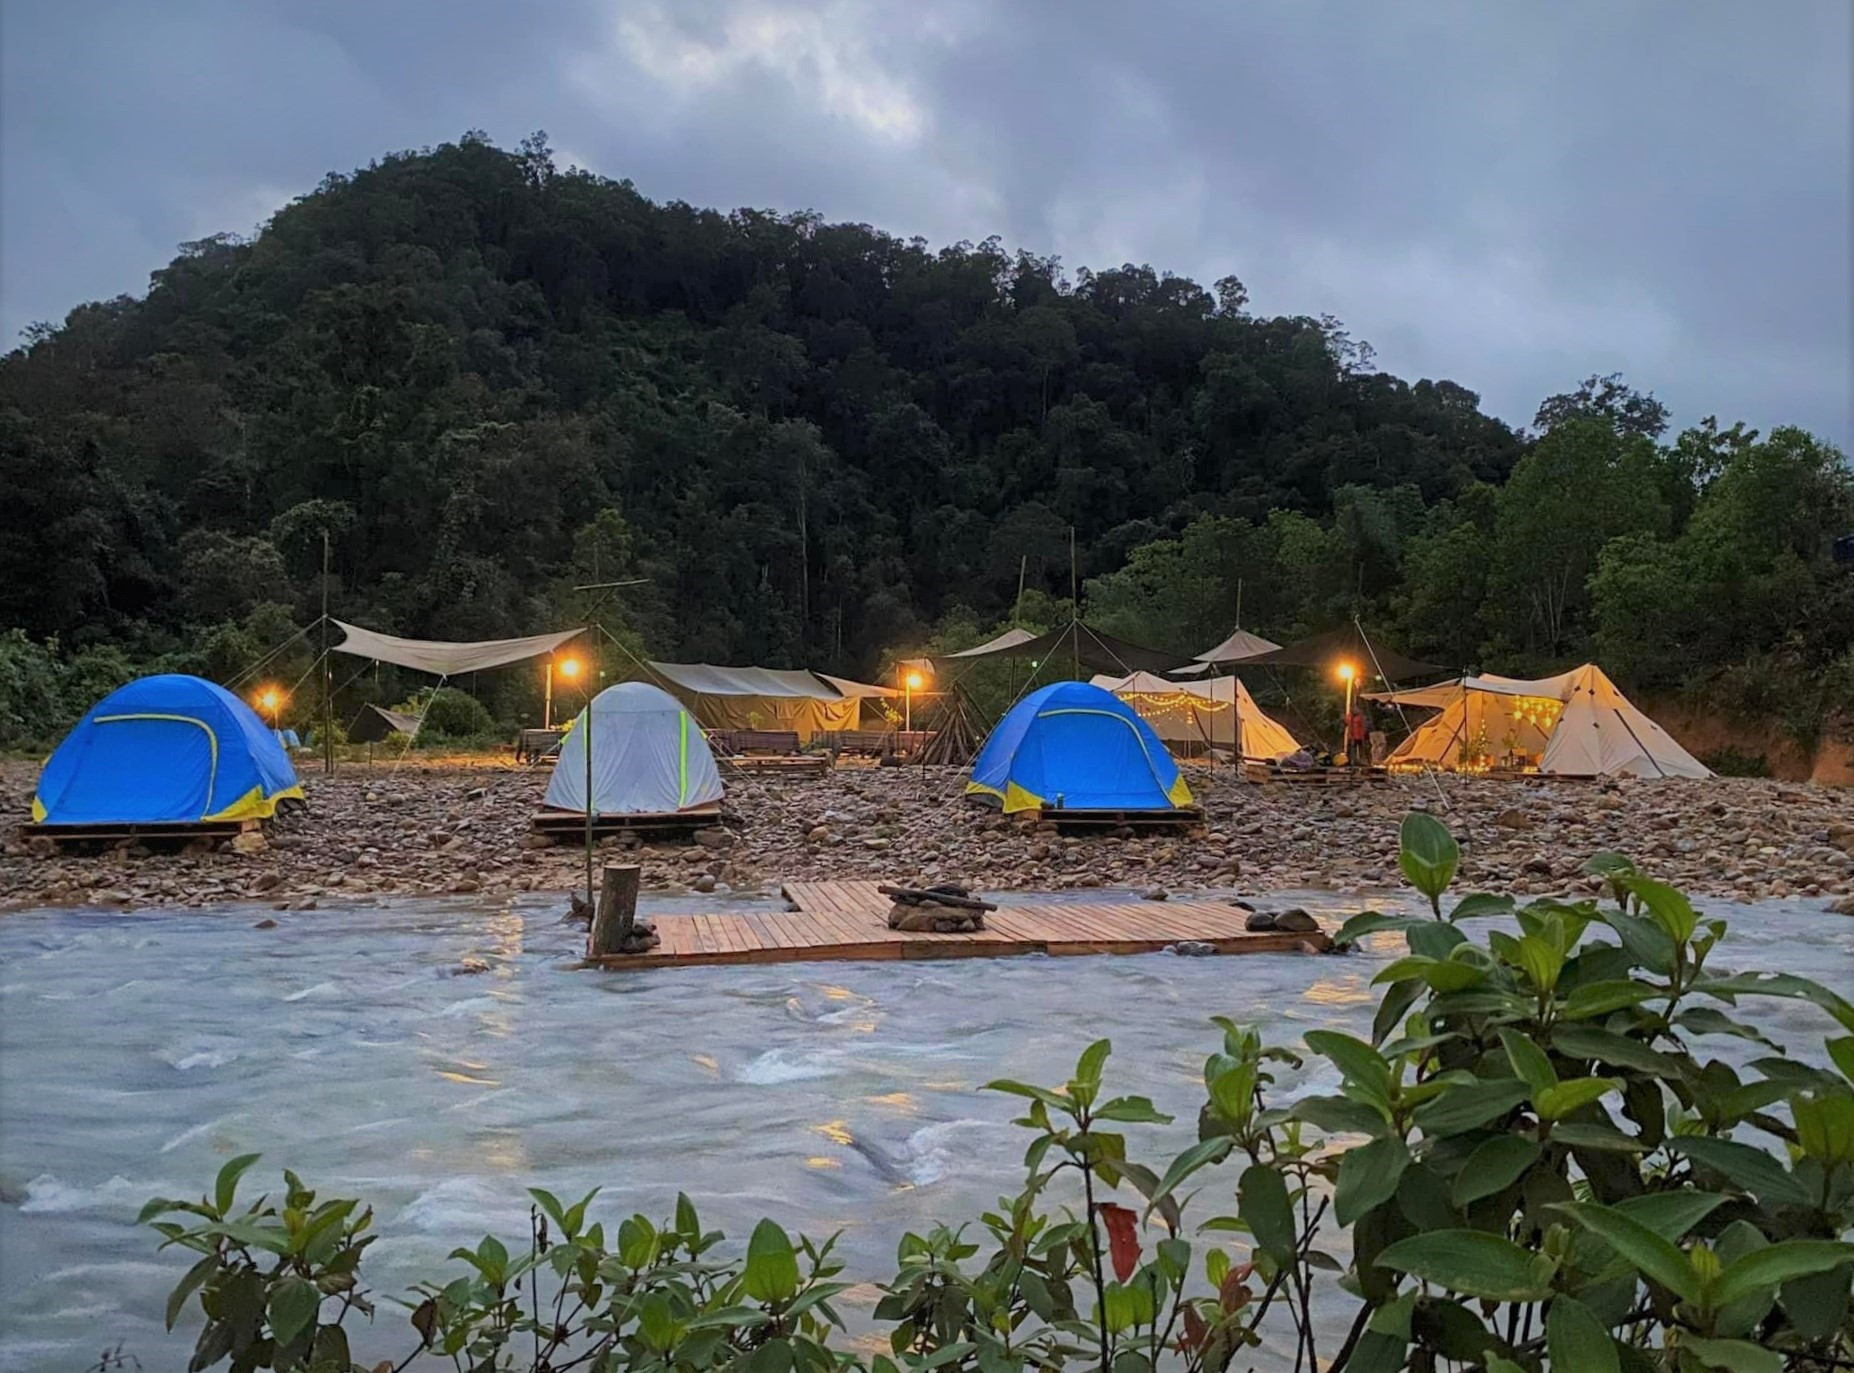 Các lều trại được cắm dọc bờ suối, tạo điểm sinh hoạt trải nghiệm lý tưởng cho du khách. Ảnh: ALĂNG NGƯỚC